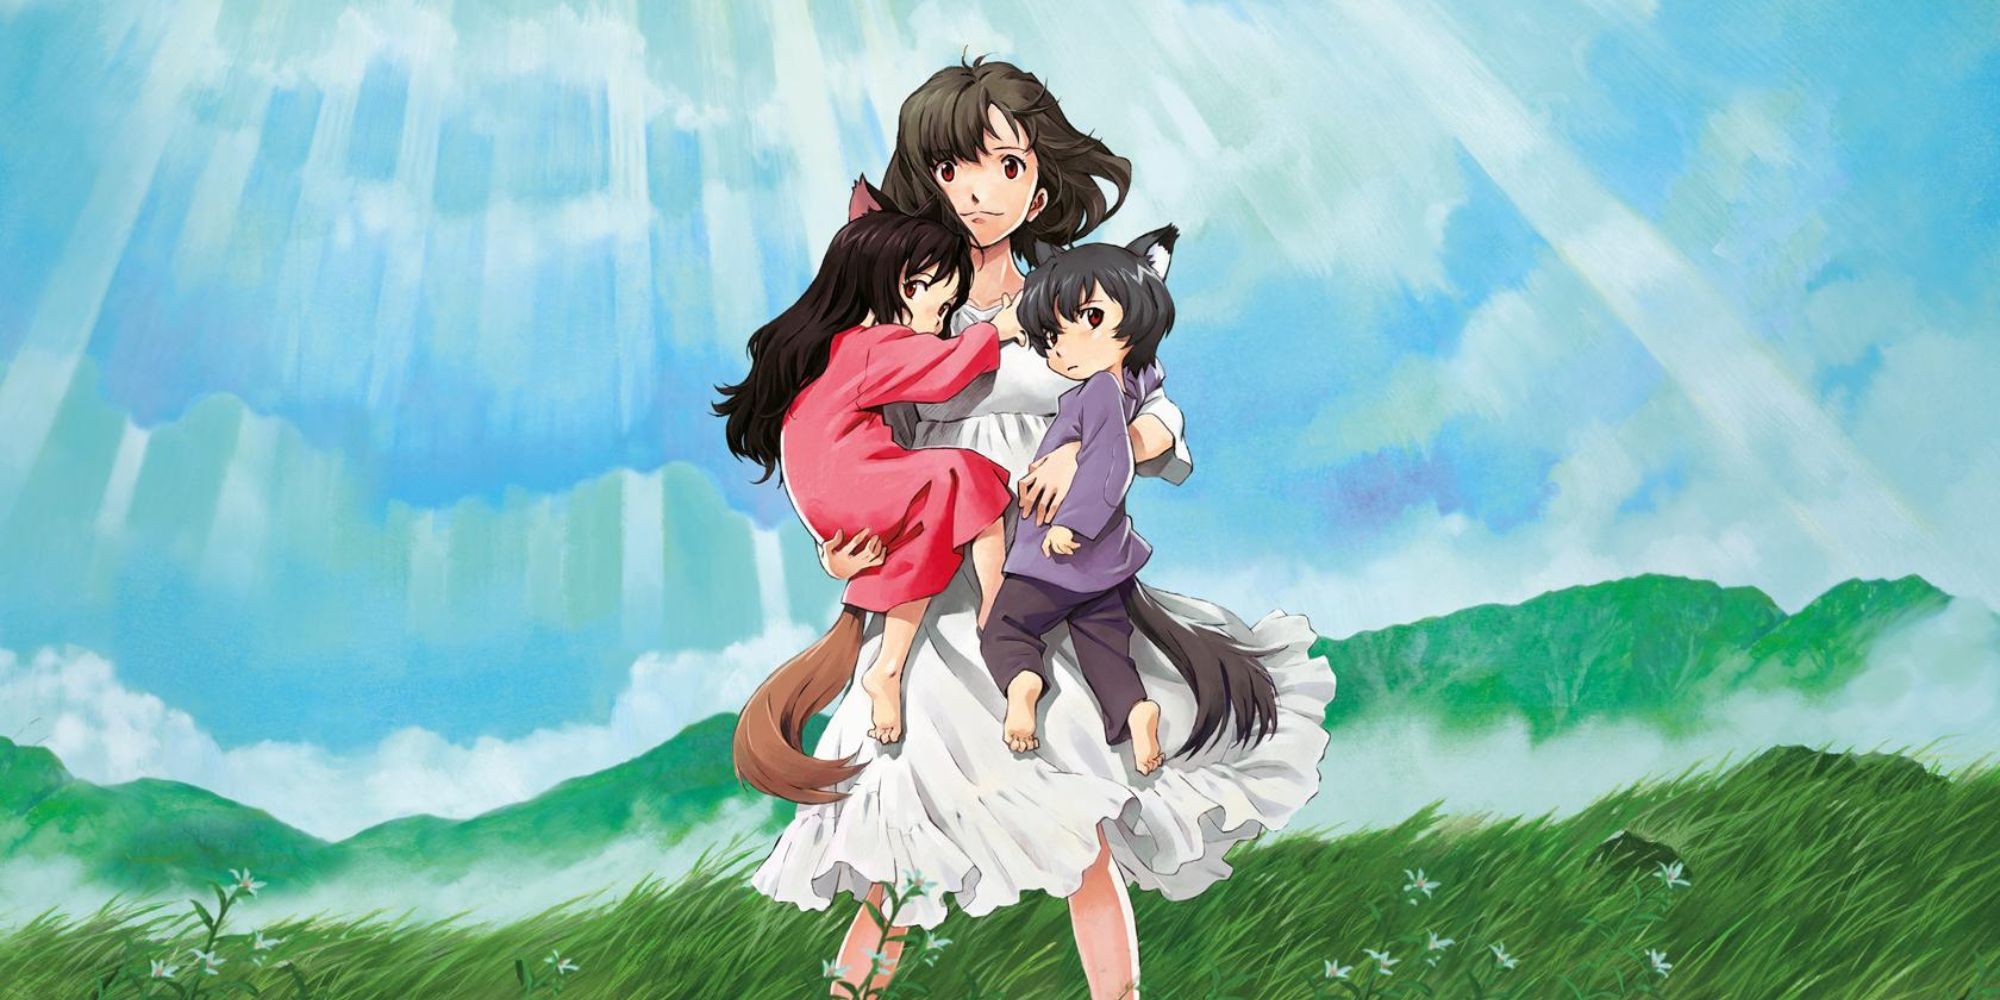 Wolf's Children protagonist holding two children